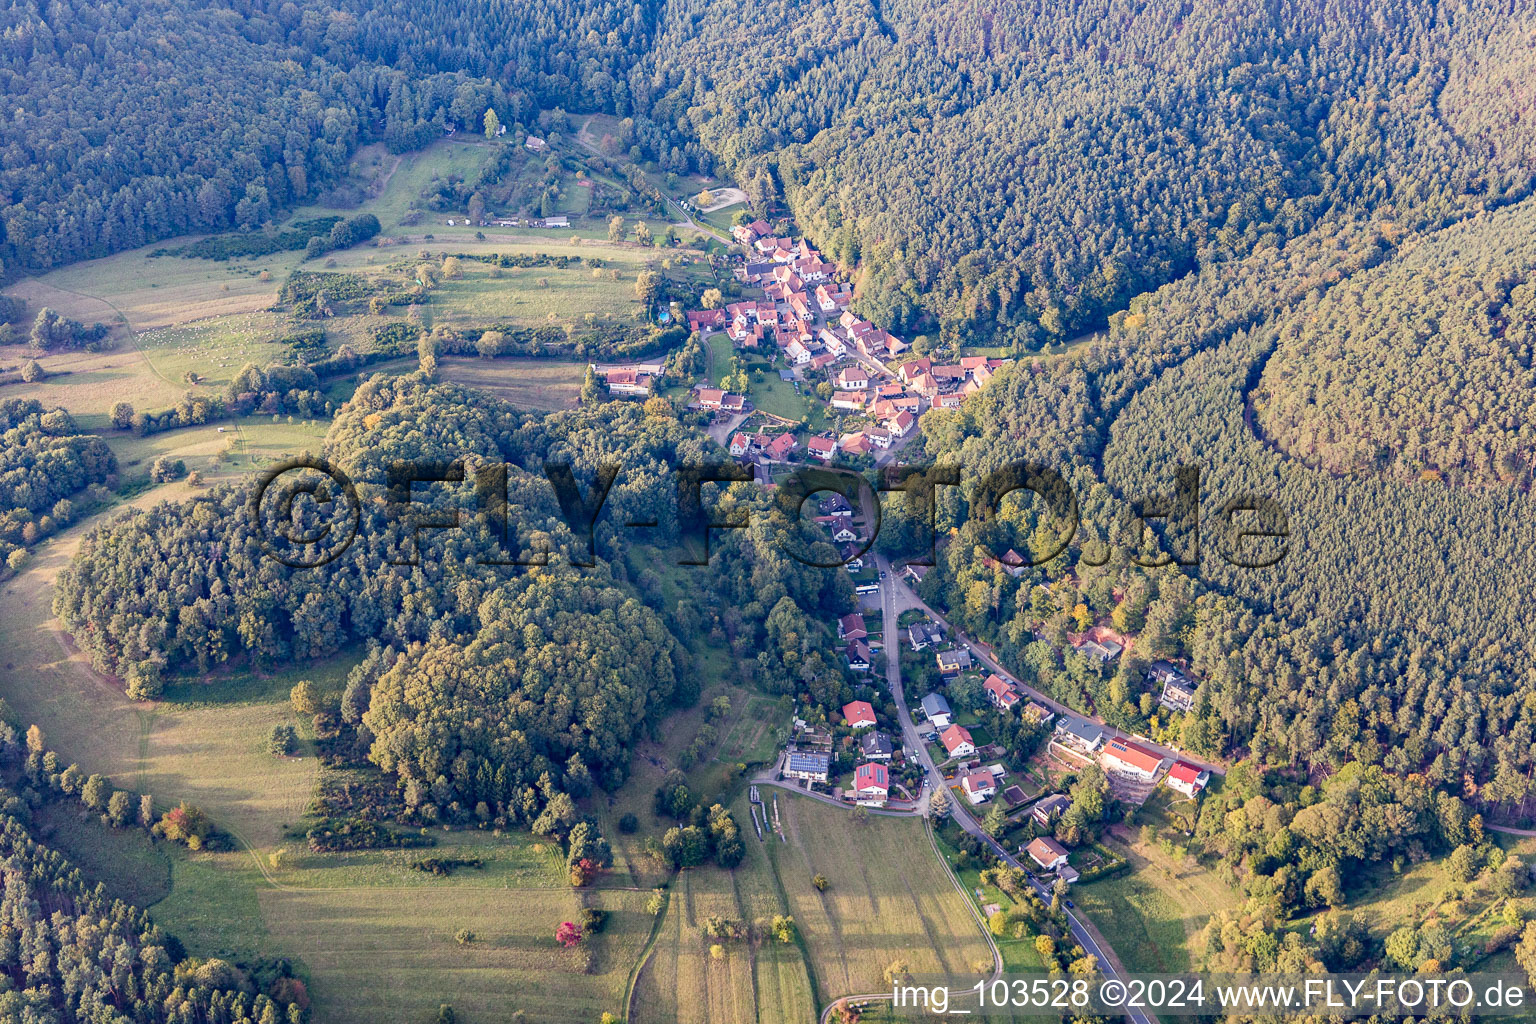 Blankenborn dans le département Rhénanie-Palatinat, Allemagne vu d'un drone